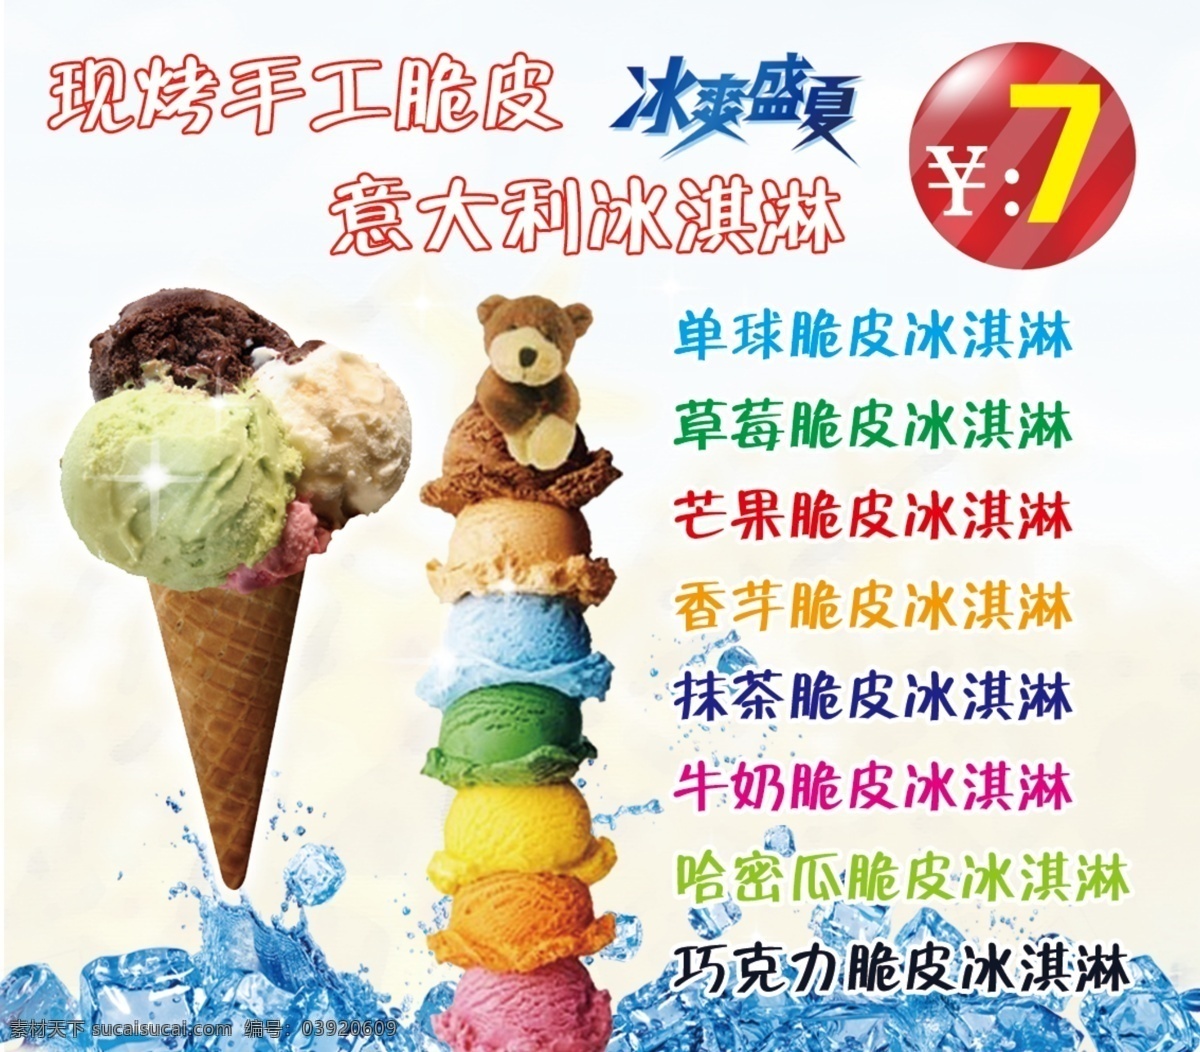 冰淇淋广告 冰淇淋宣传 冰淇淋海报 手工脆皮 冰淇淋 广告海报